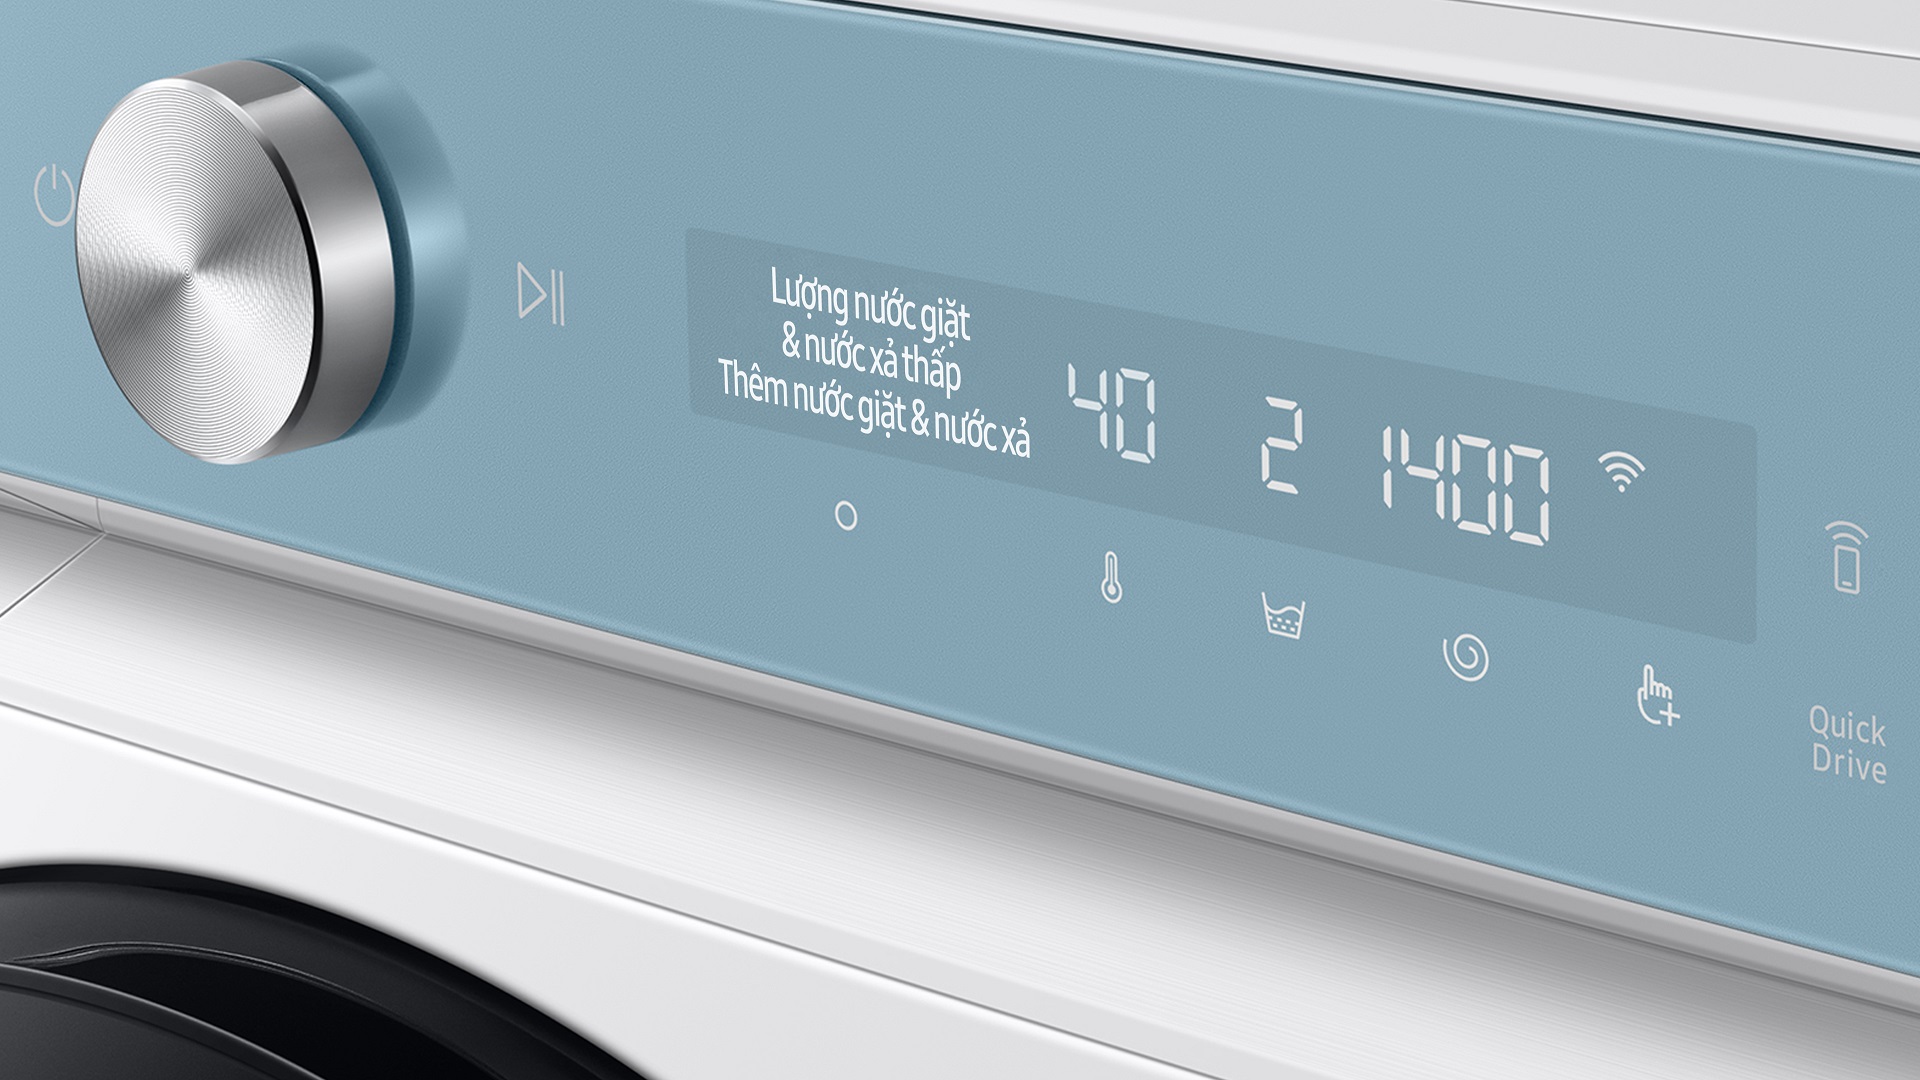 Samsung Bespoke AI™, máy giặt thông minh tự động phân bổ nước giặt xả theo độ bẩn và chất liệu sợi vải - Bang Dieu Khien